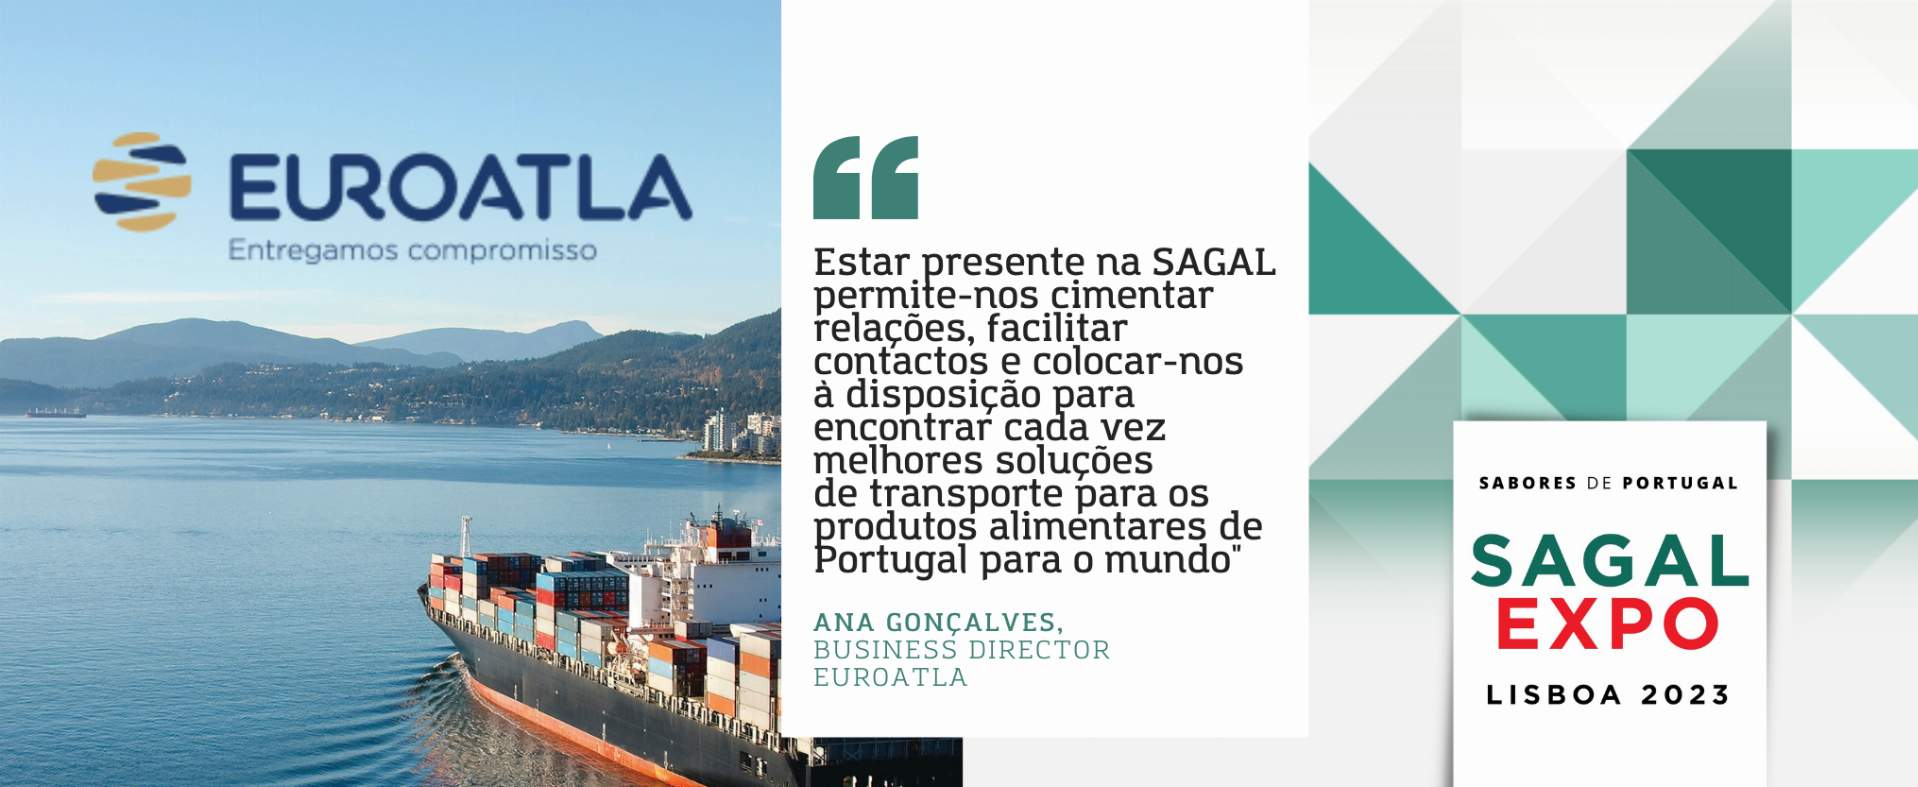 Euroatla: "Estar presente na SAGAL permite-nos cimentar relações, facilitar contactos e colocar-nos à disposição para encontrar cada vez melhores soluções de transporte para os produtos alimentares de Portugal para o mundo"